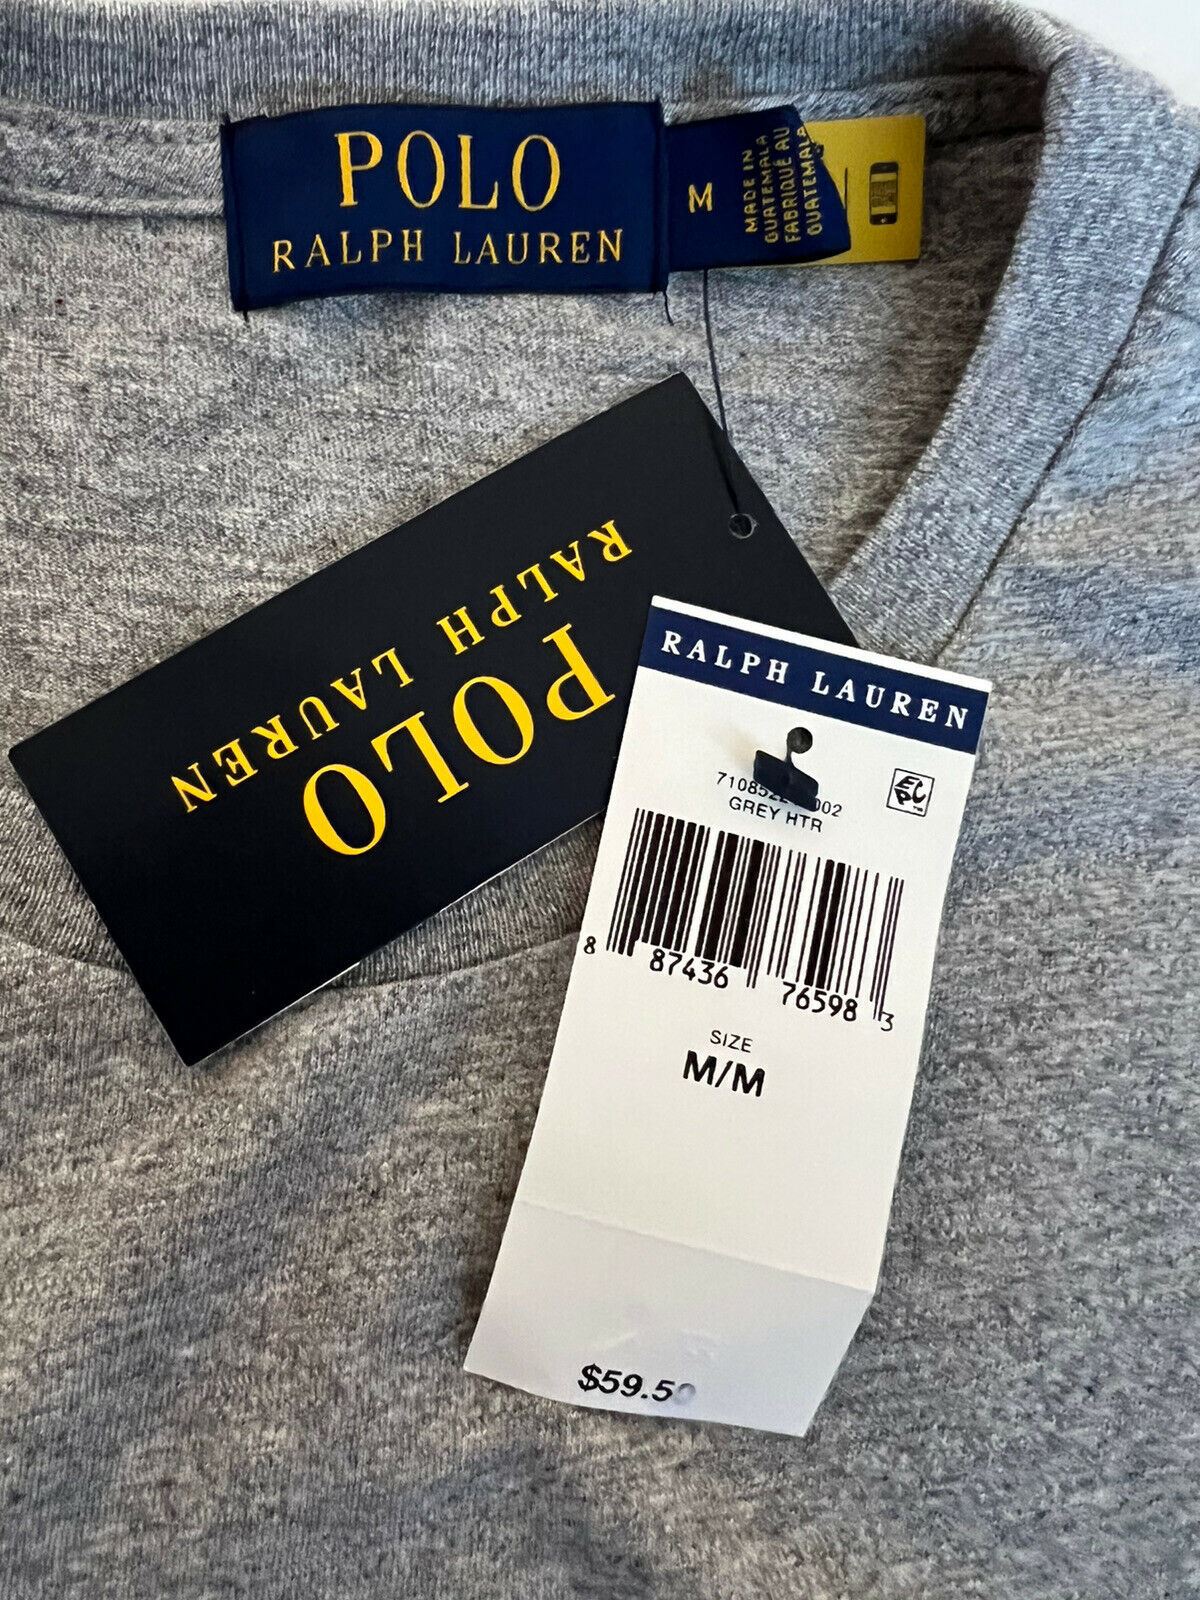 NWT 59.50 Polo Ralph Lauren Bear T-Shirt Gray Medium